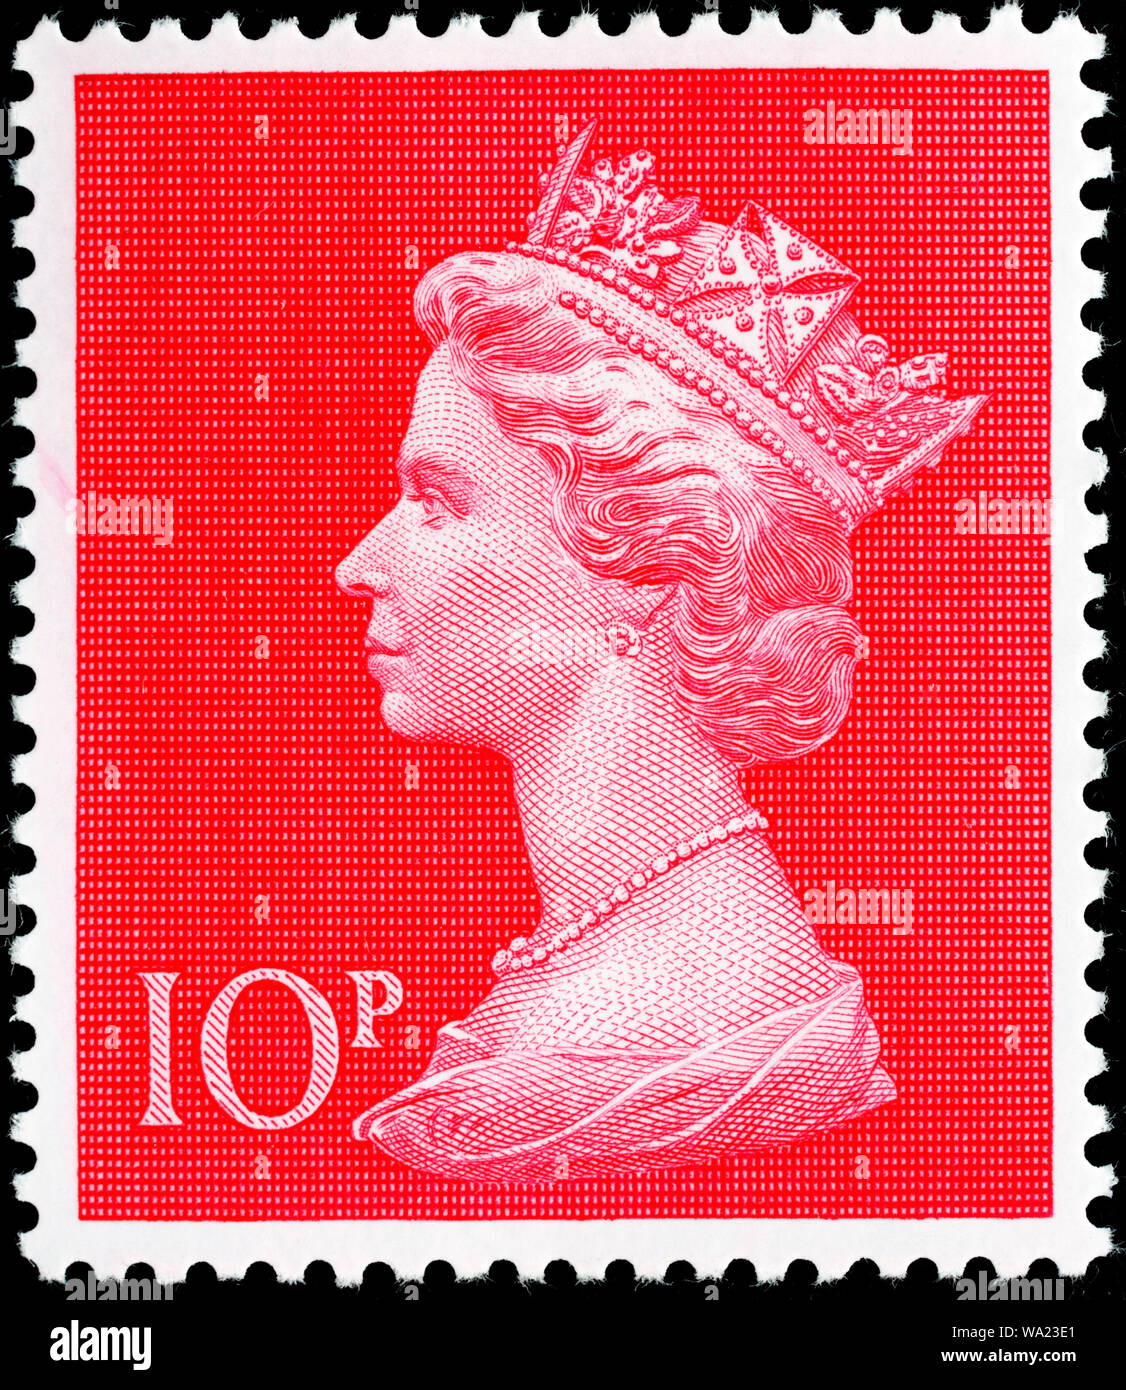 Queen Elizabeth II, Machin series, postage stamp, UK, 1970 Stock Photo